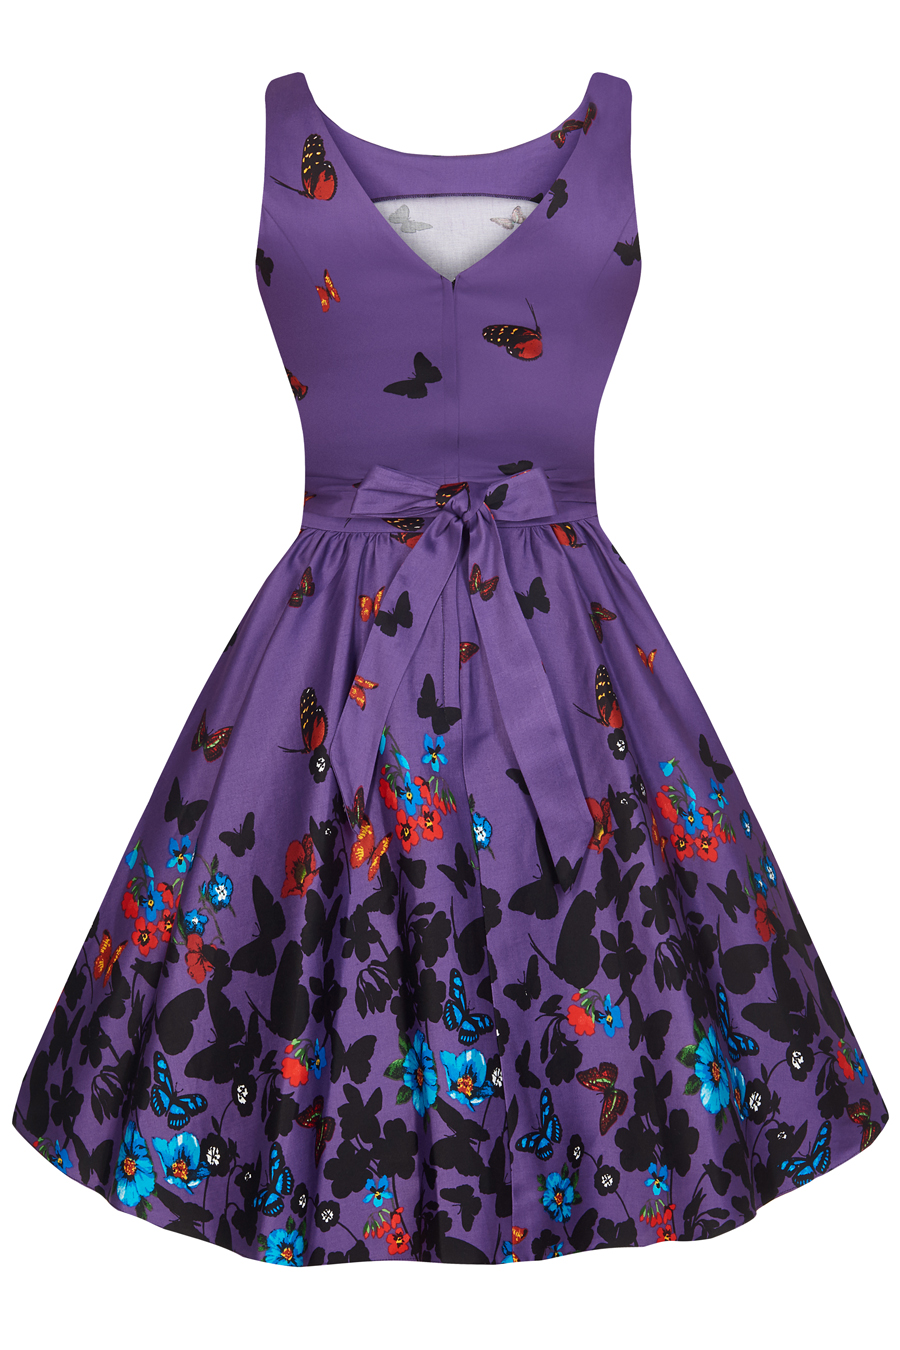 RKL27 Lady Vintage London Purple Butterfly Tea Dress Swing Retro Rockabilly